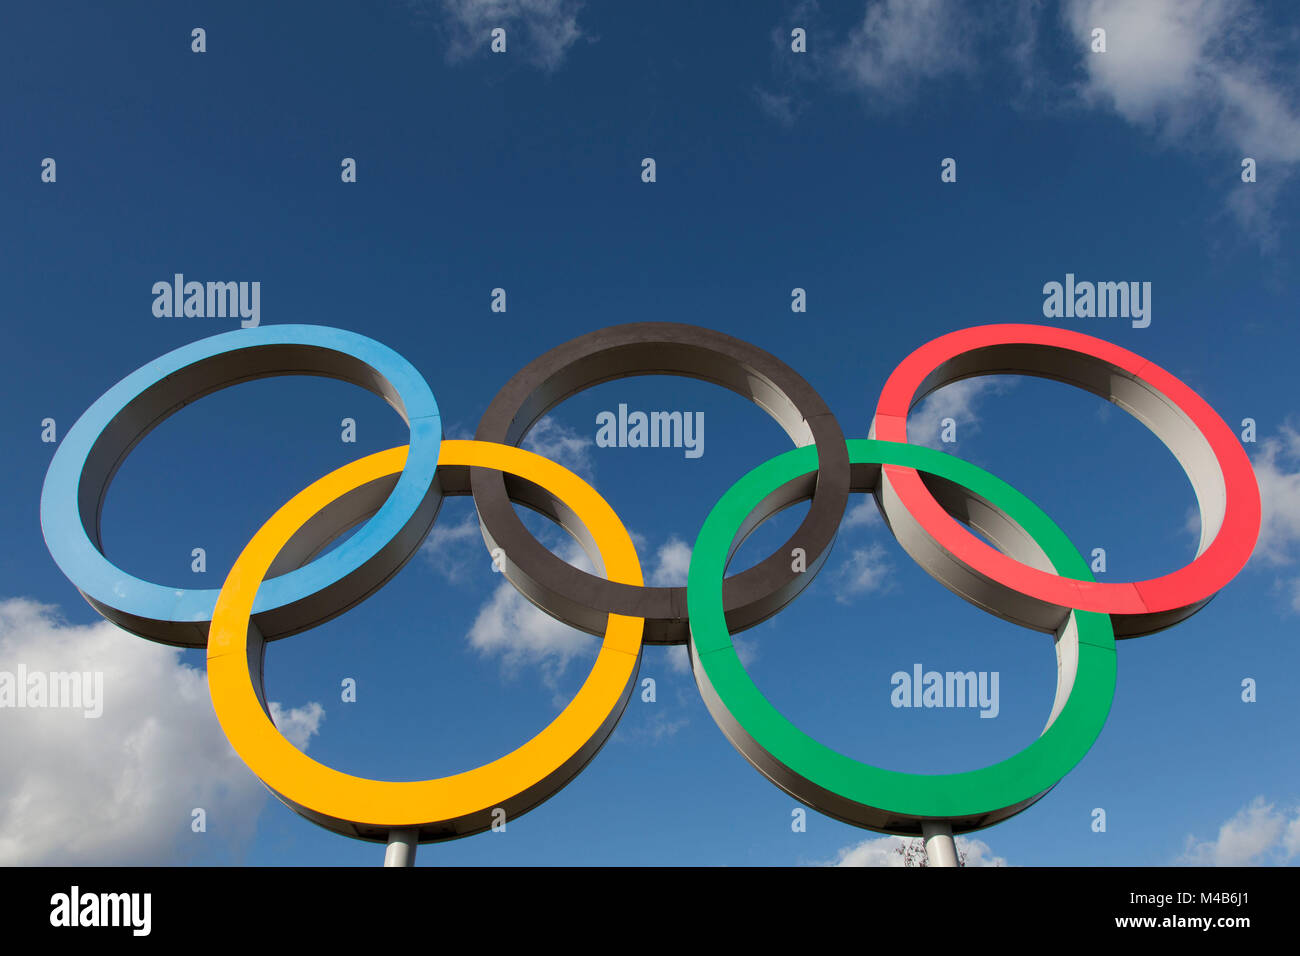 LONDON, UK, 15. Februar 2018: Das olympische Symbol, das aus fünf miteinander verbundenen farbige Ringe, unter einem blauen Himmel Stockfoto